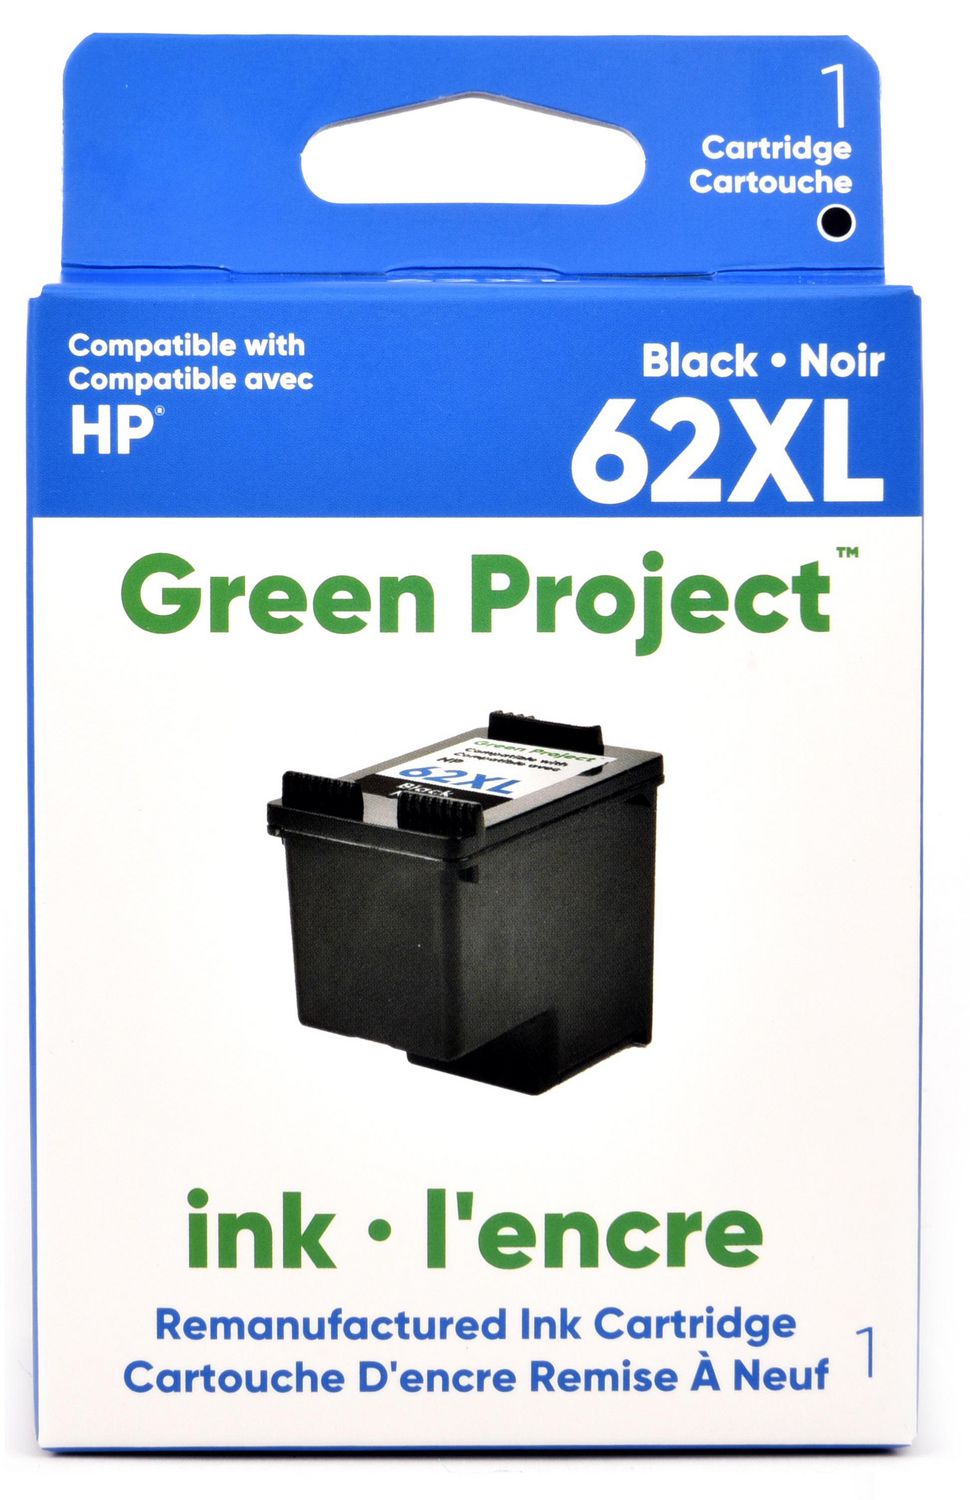 2 Cartouches compatibles HP 62XL - 1 Noir + 1 Couleurs